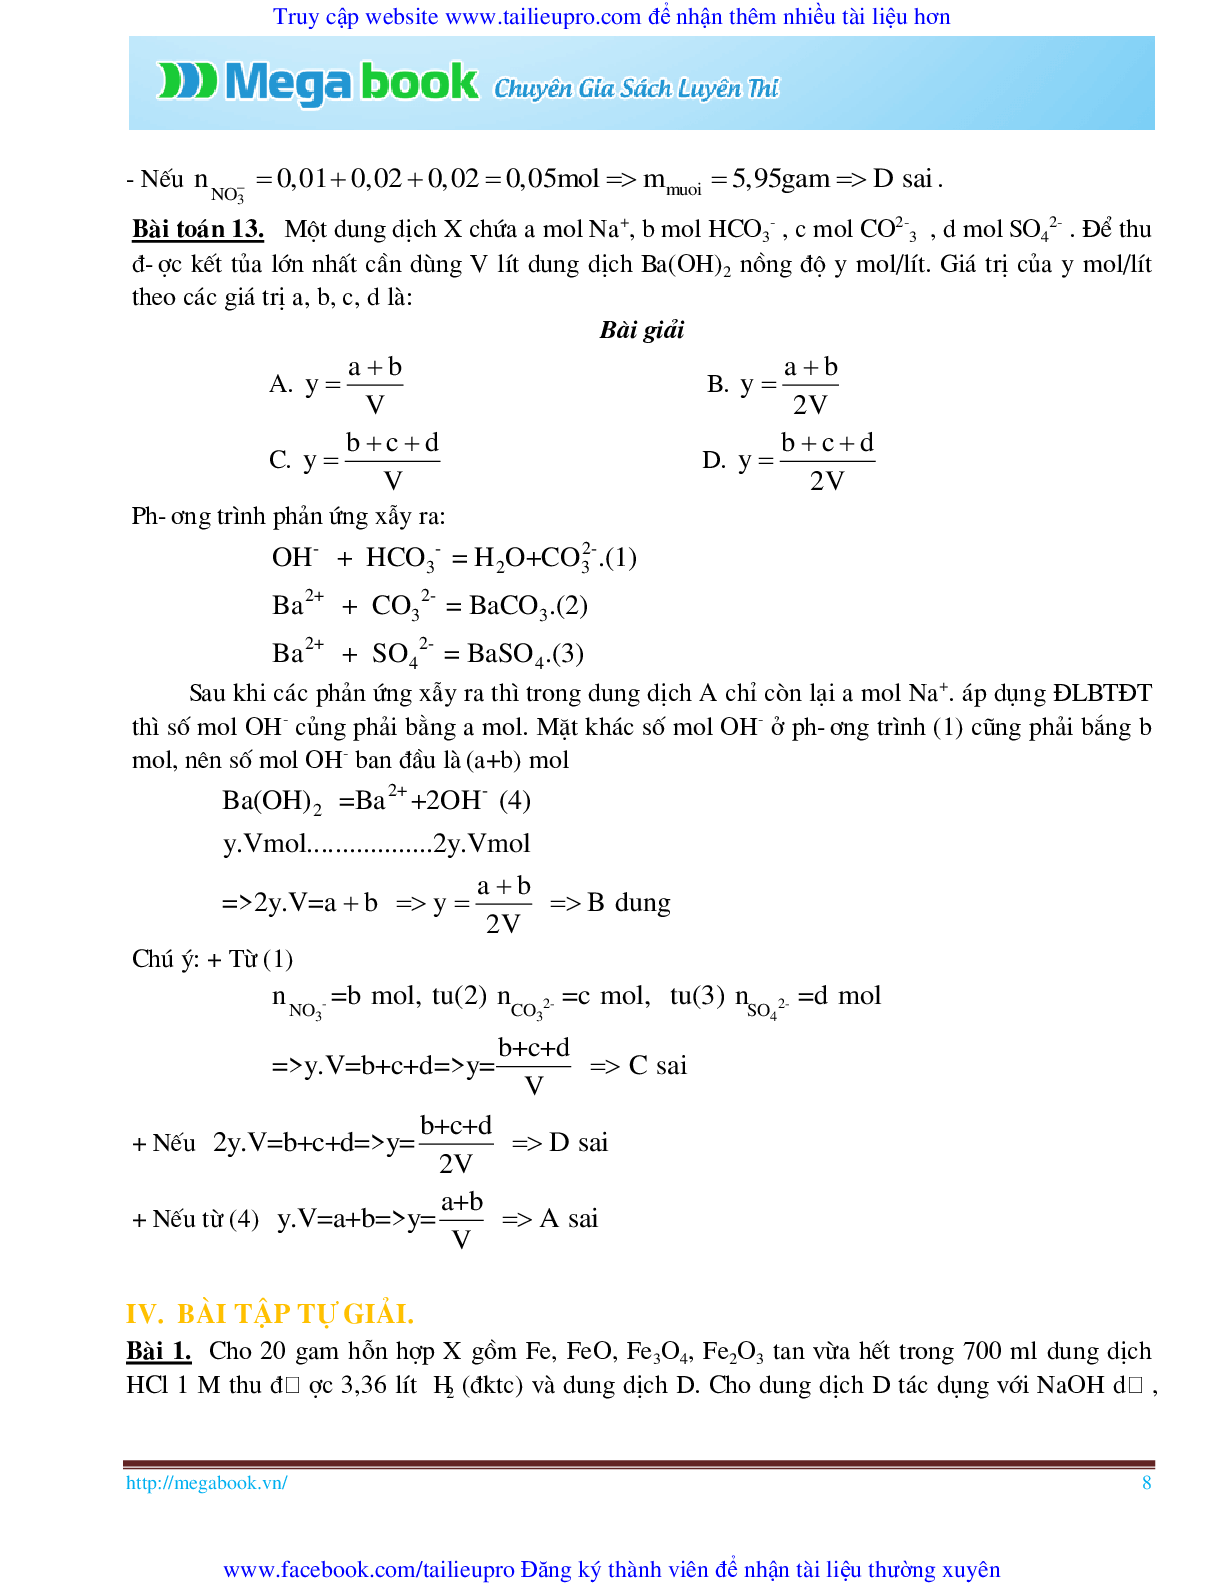 10 Bí quyết chinh phục phương pháp giải toán chủ chốt môn Hóa học ôn thi THPT Quốc Gia (trang 8)